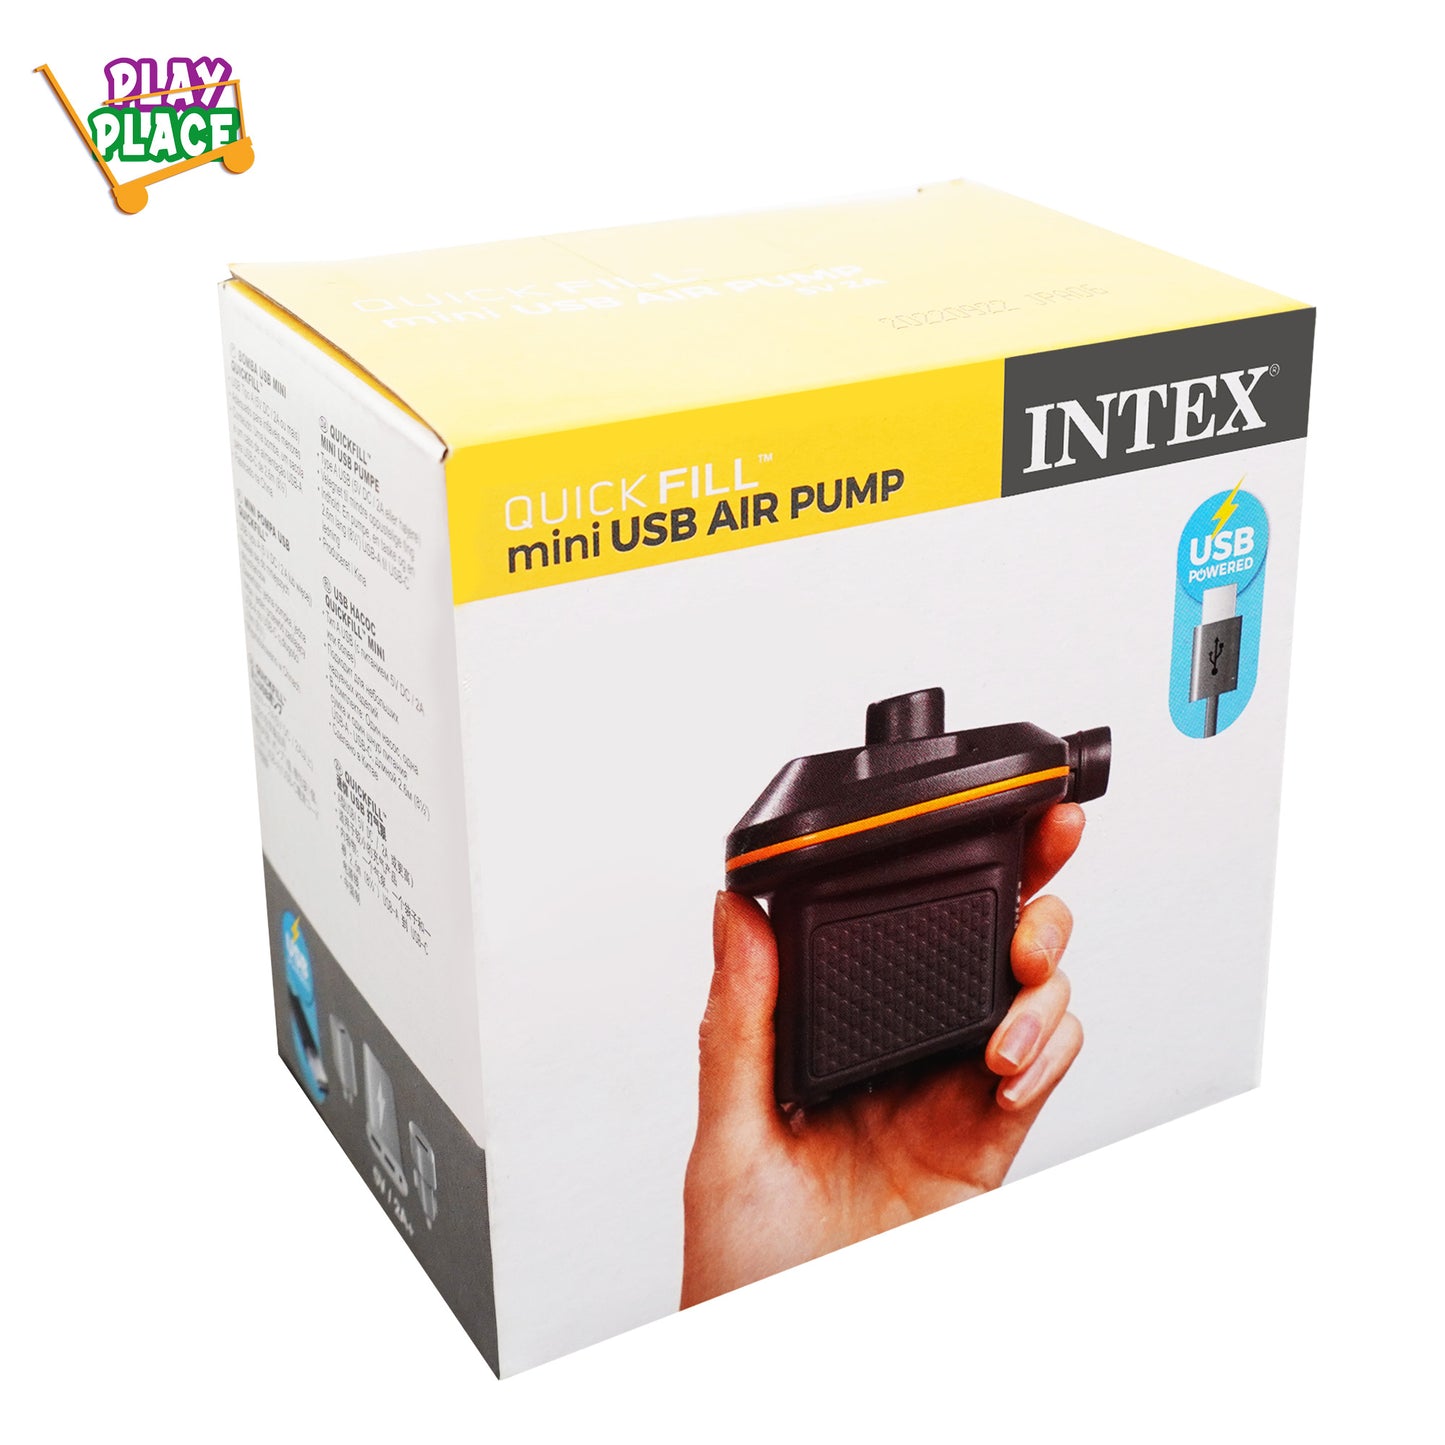 Intex Quick fill mini USB Pump